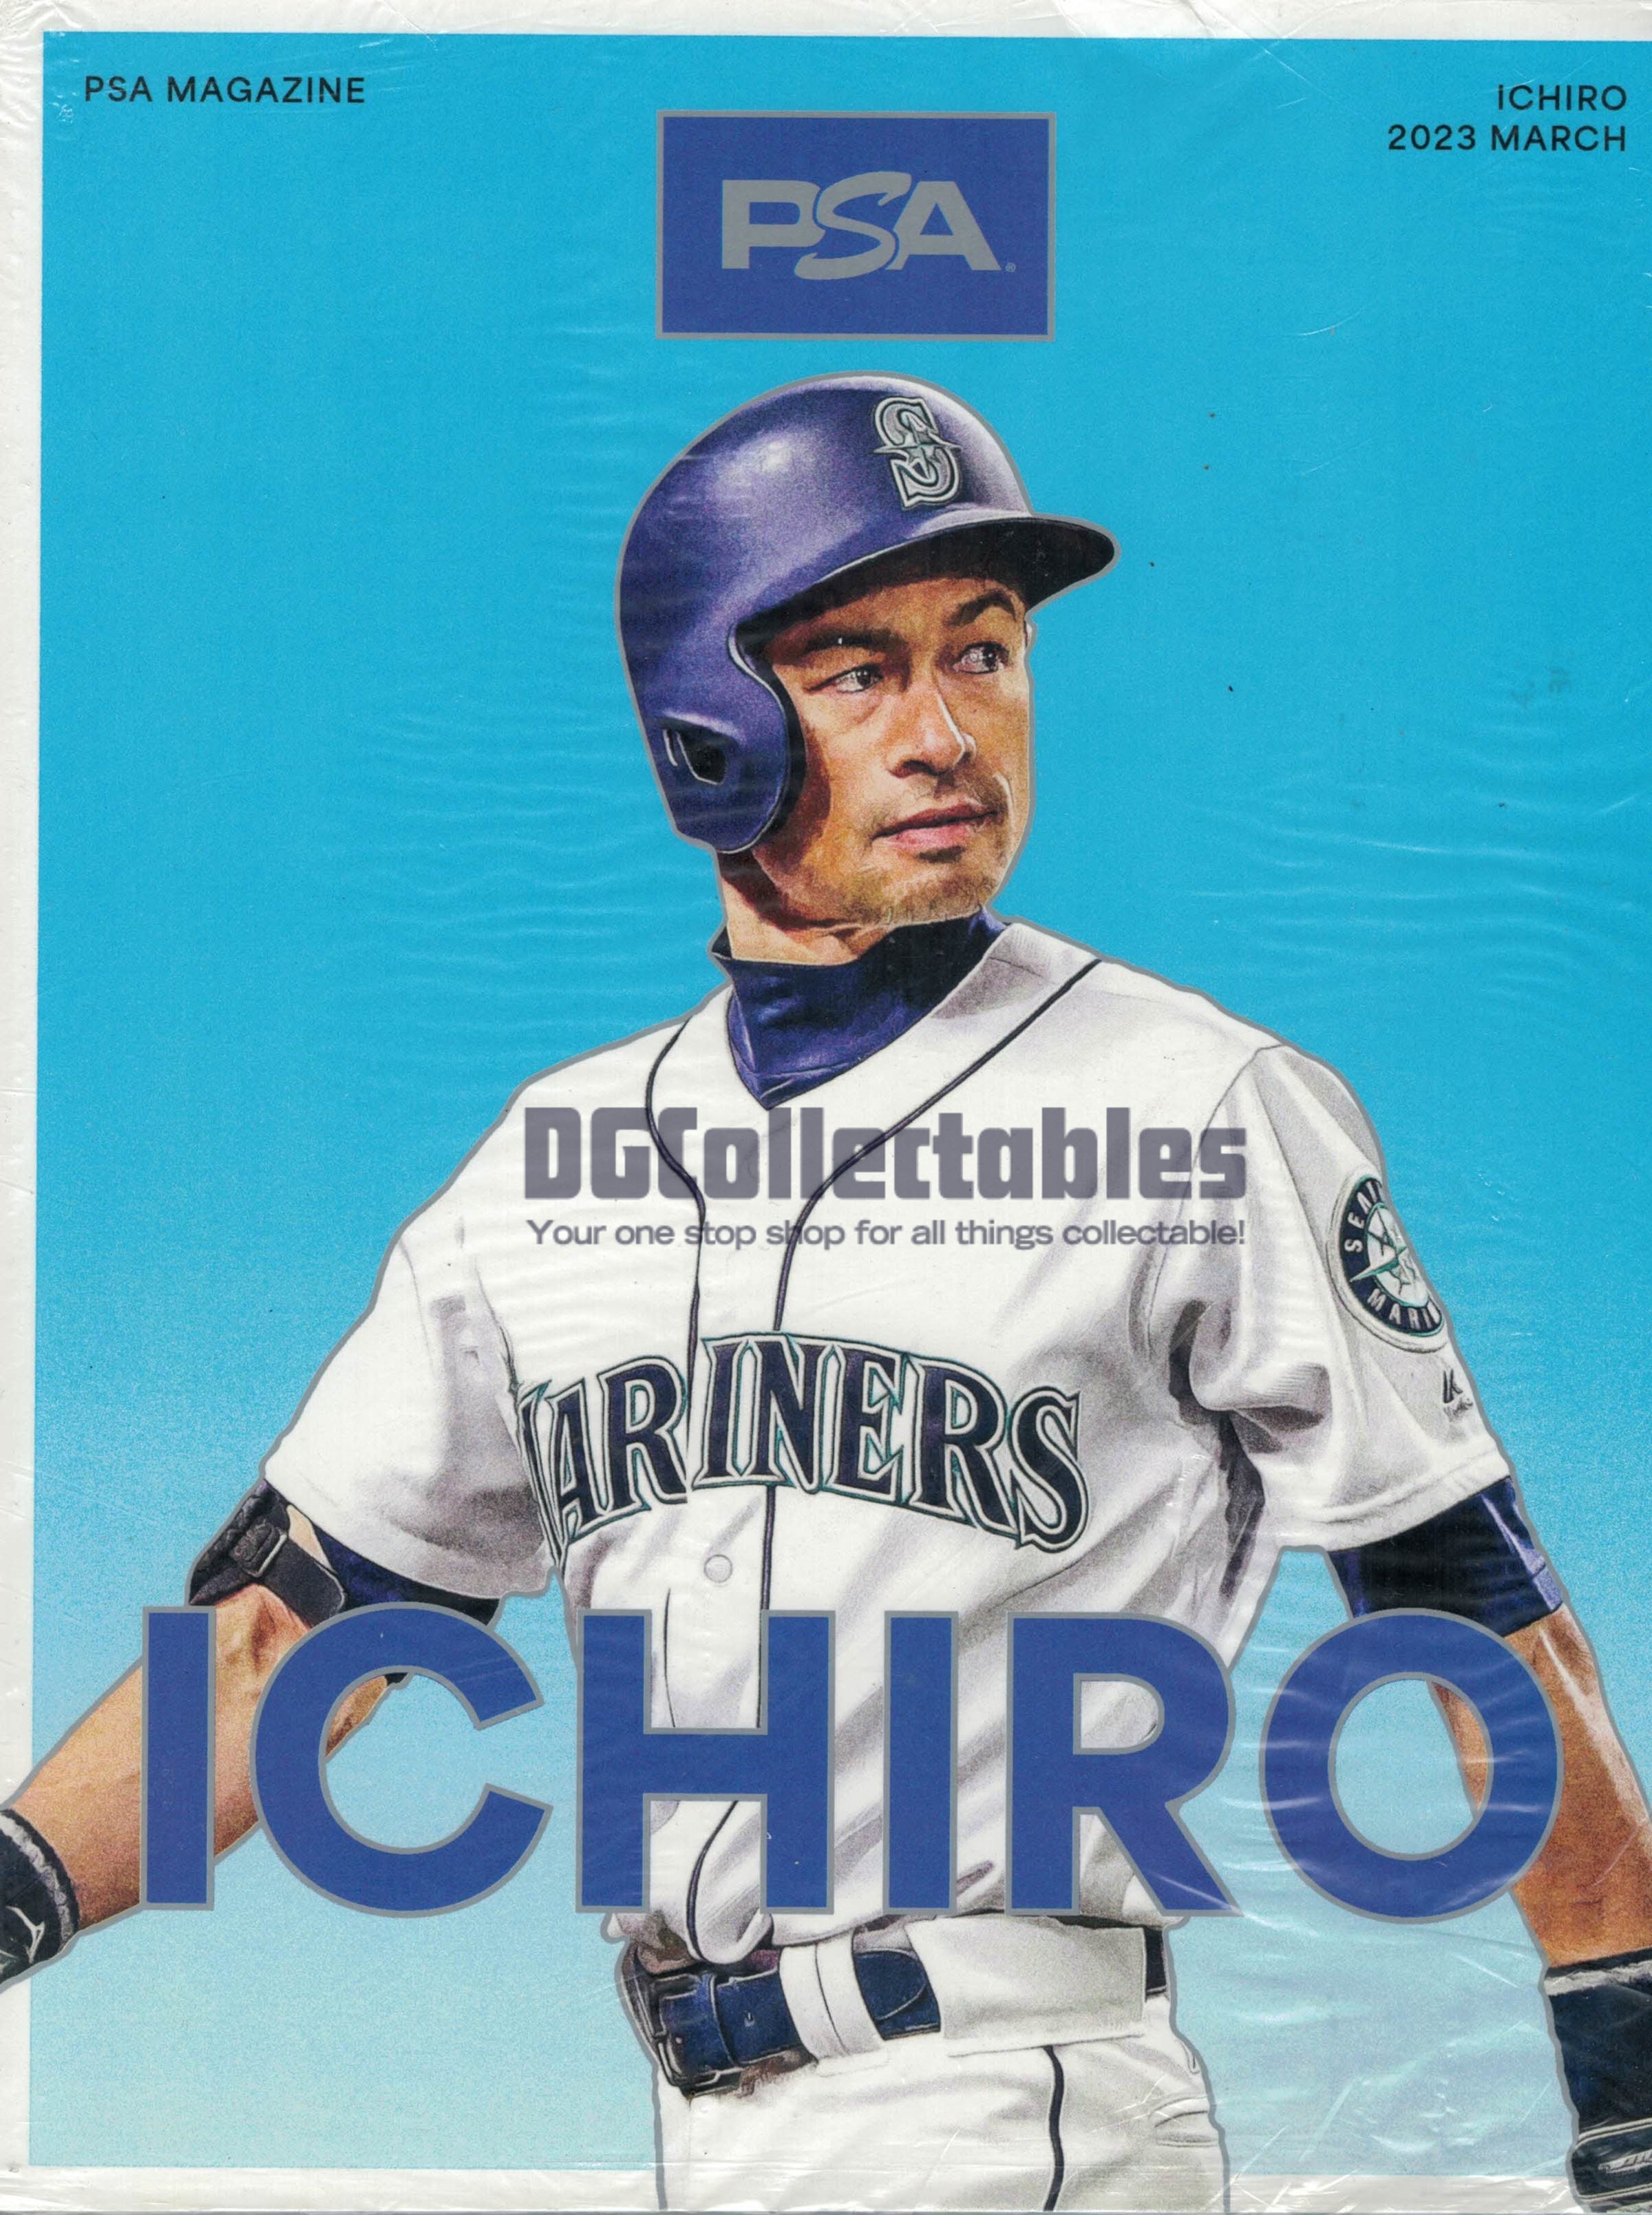 PSA Magazine March 2023 Ichiro Suzuki Cover